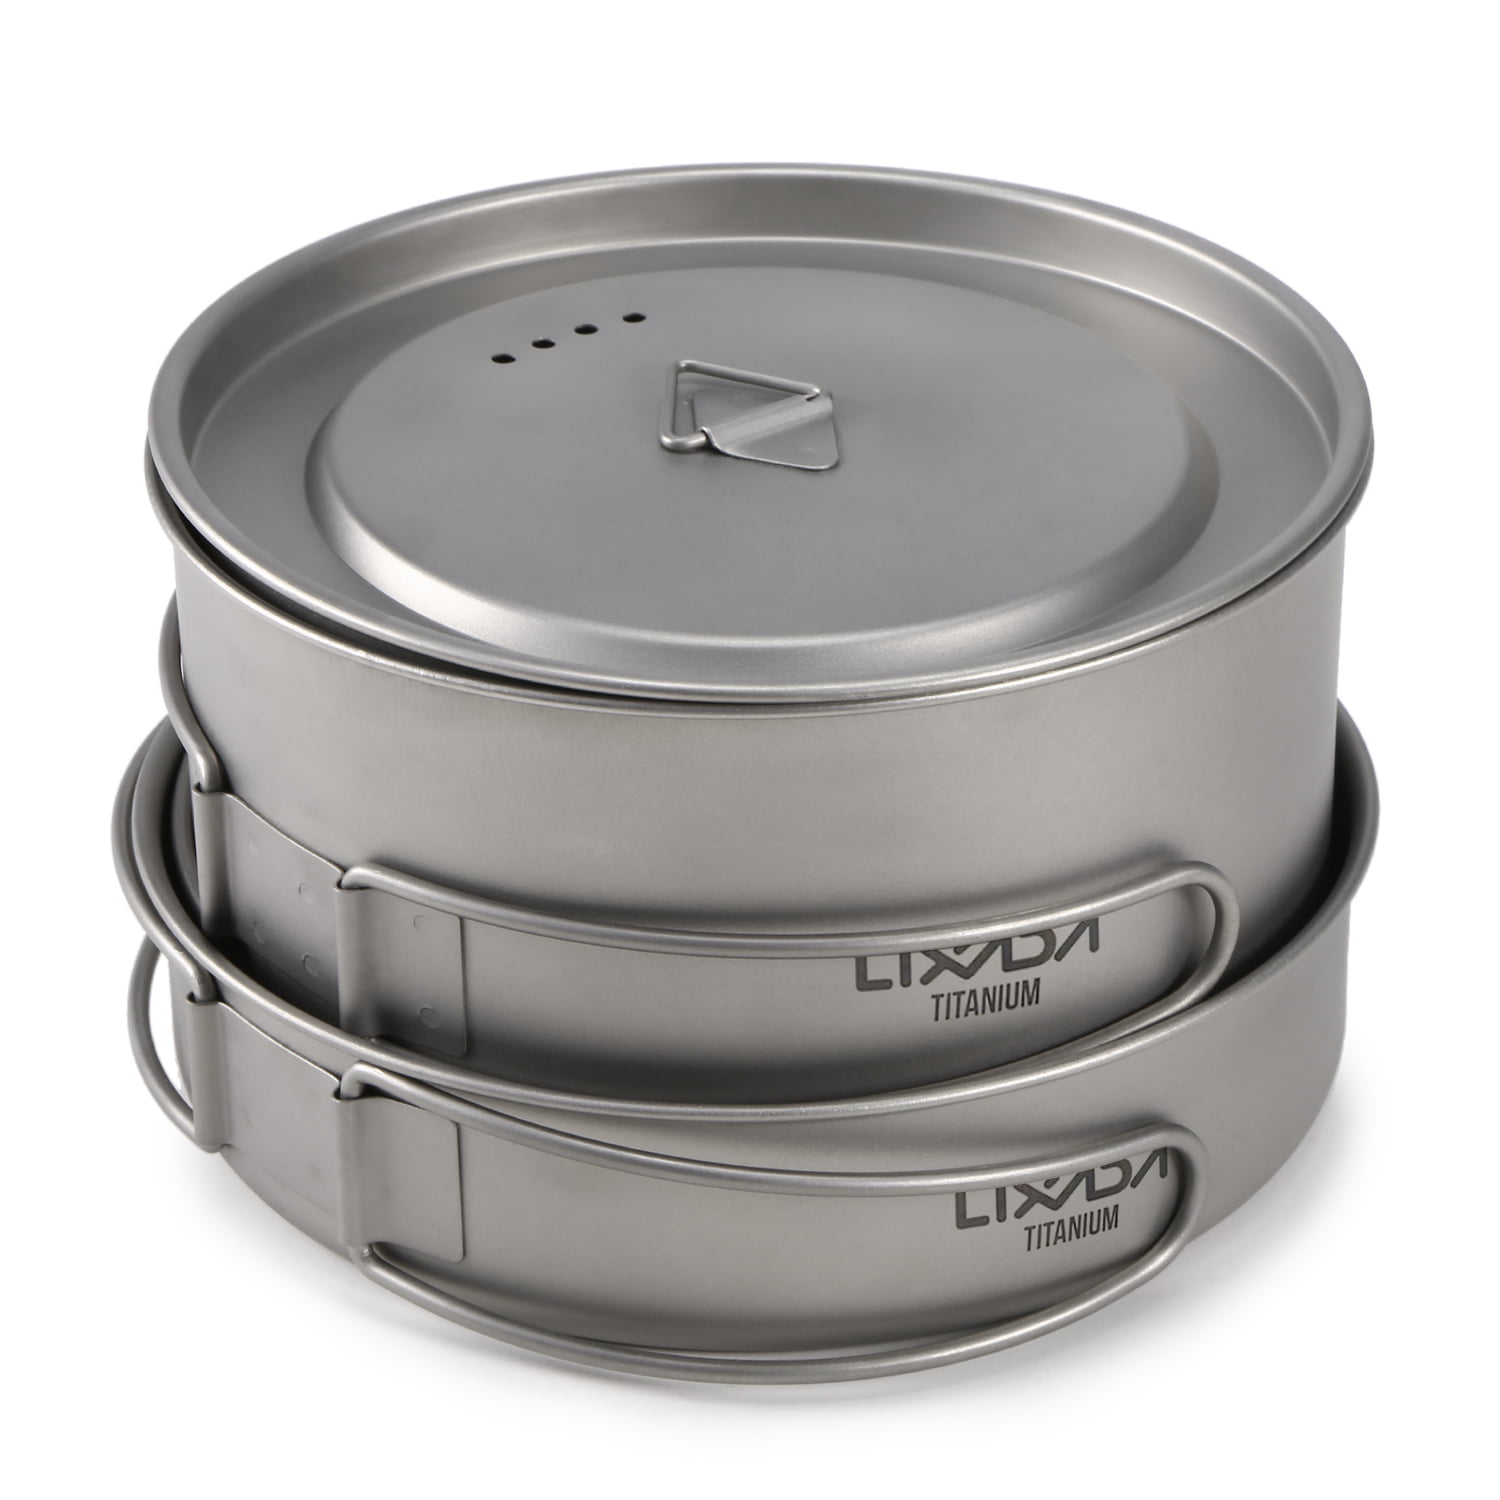 Lixada 2pcs Camping Cookware Set Titanium Pot Pan Cooking Set with Foldable C9C5 